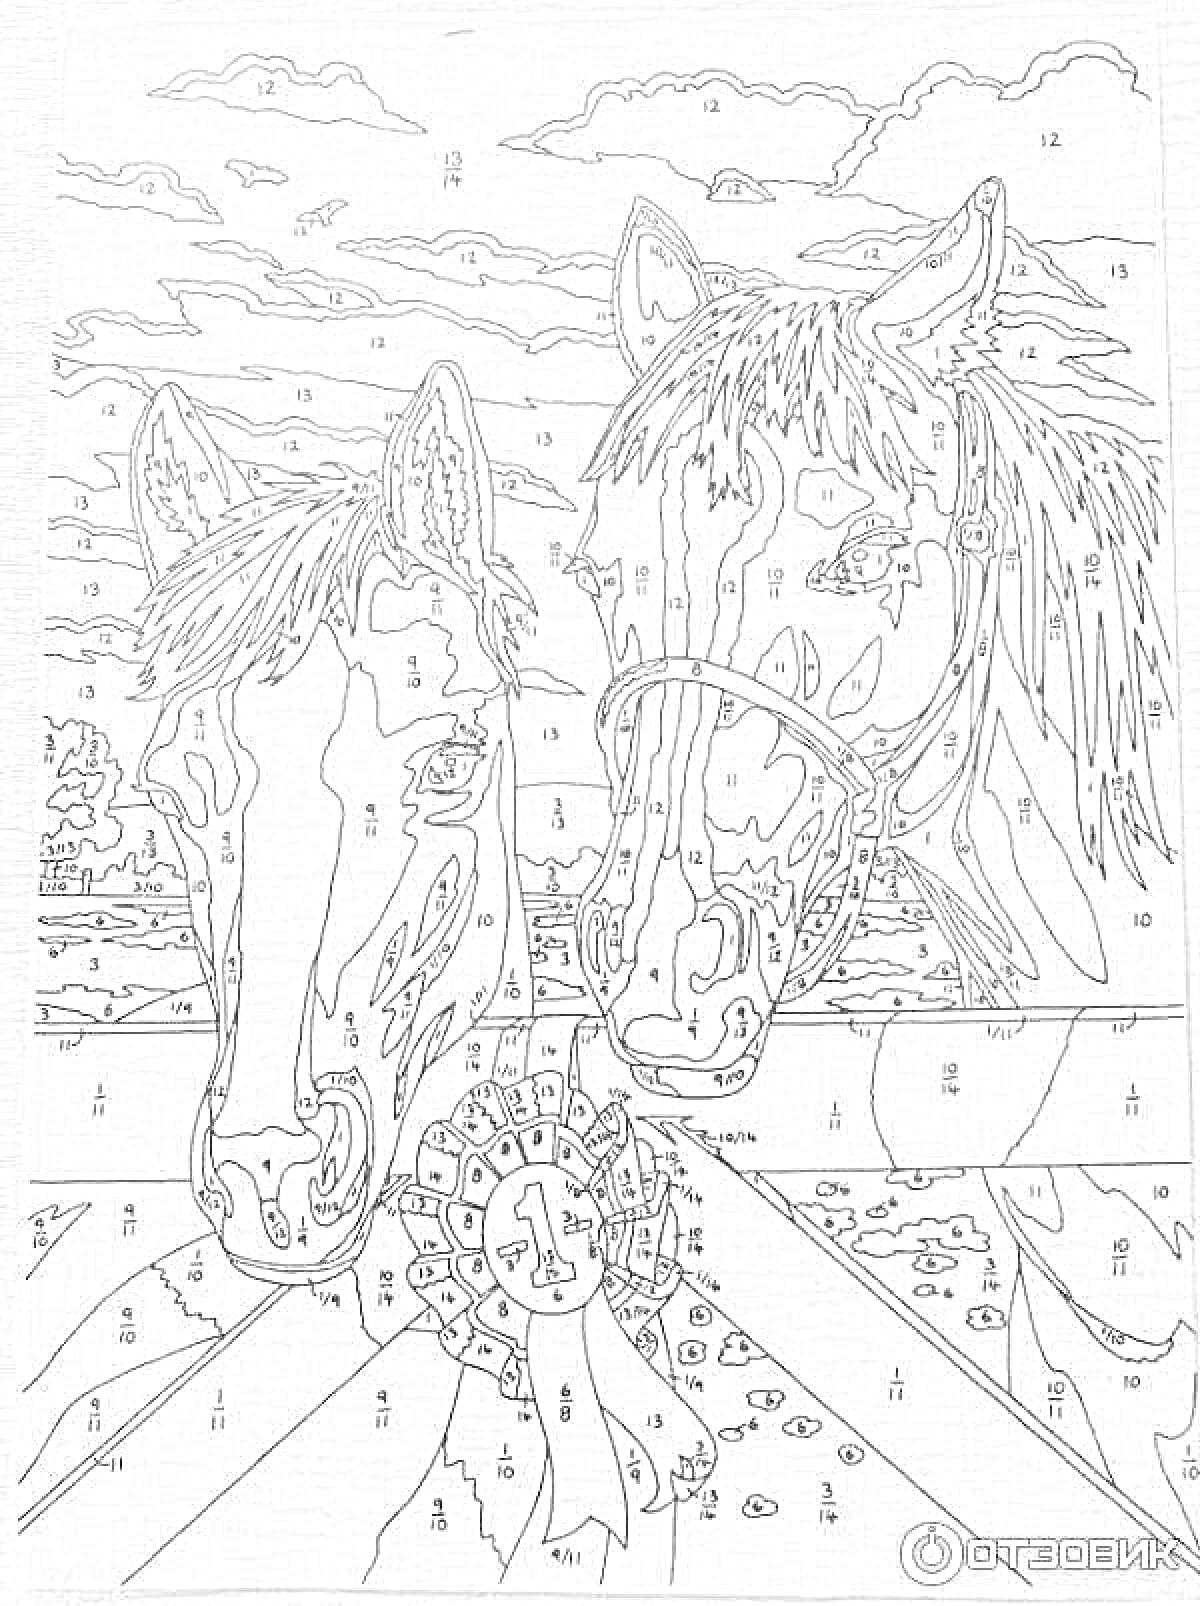 Лошади на фоне природы с цветком. Набор раскраски по номерам - два коня с гривами и поводьями на сельском фоне с облаками и горизонтом.